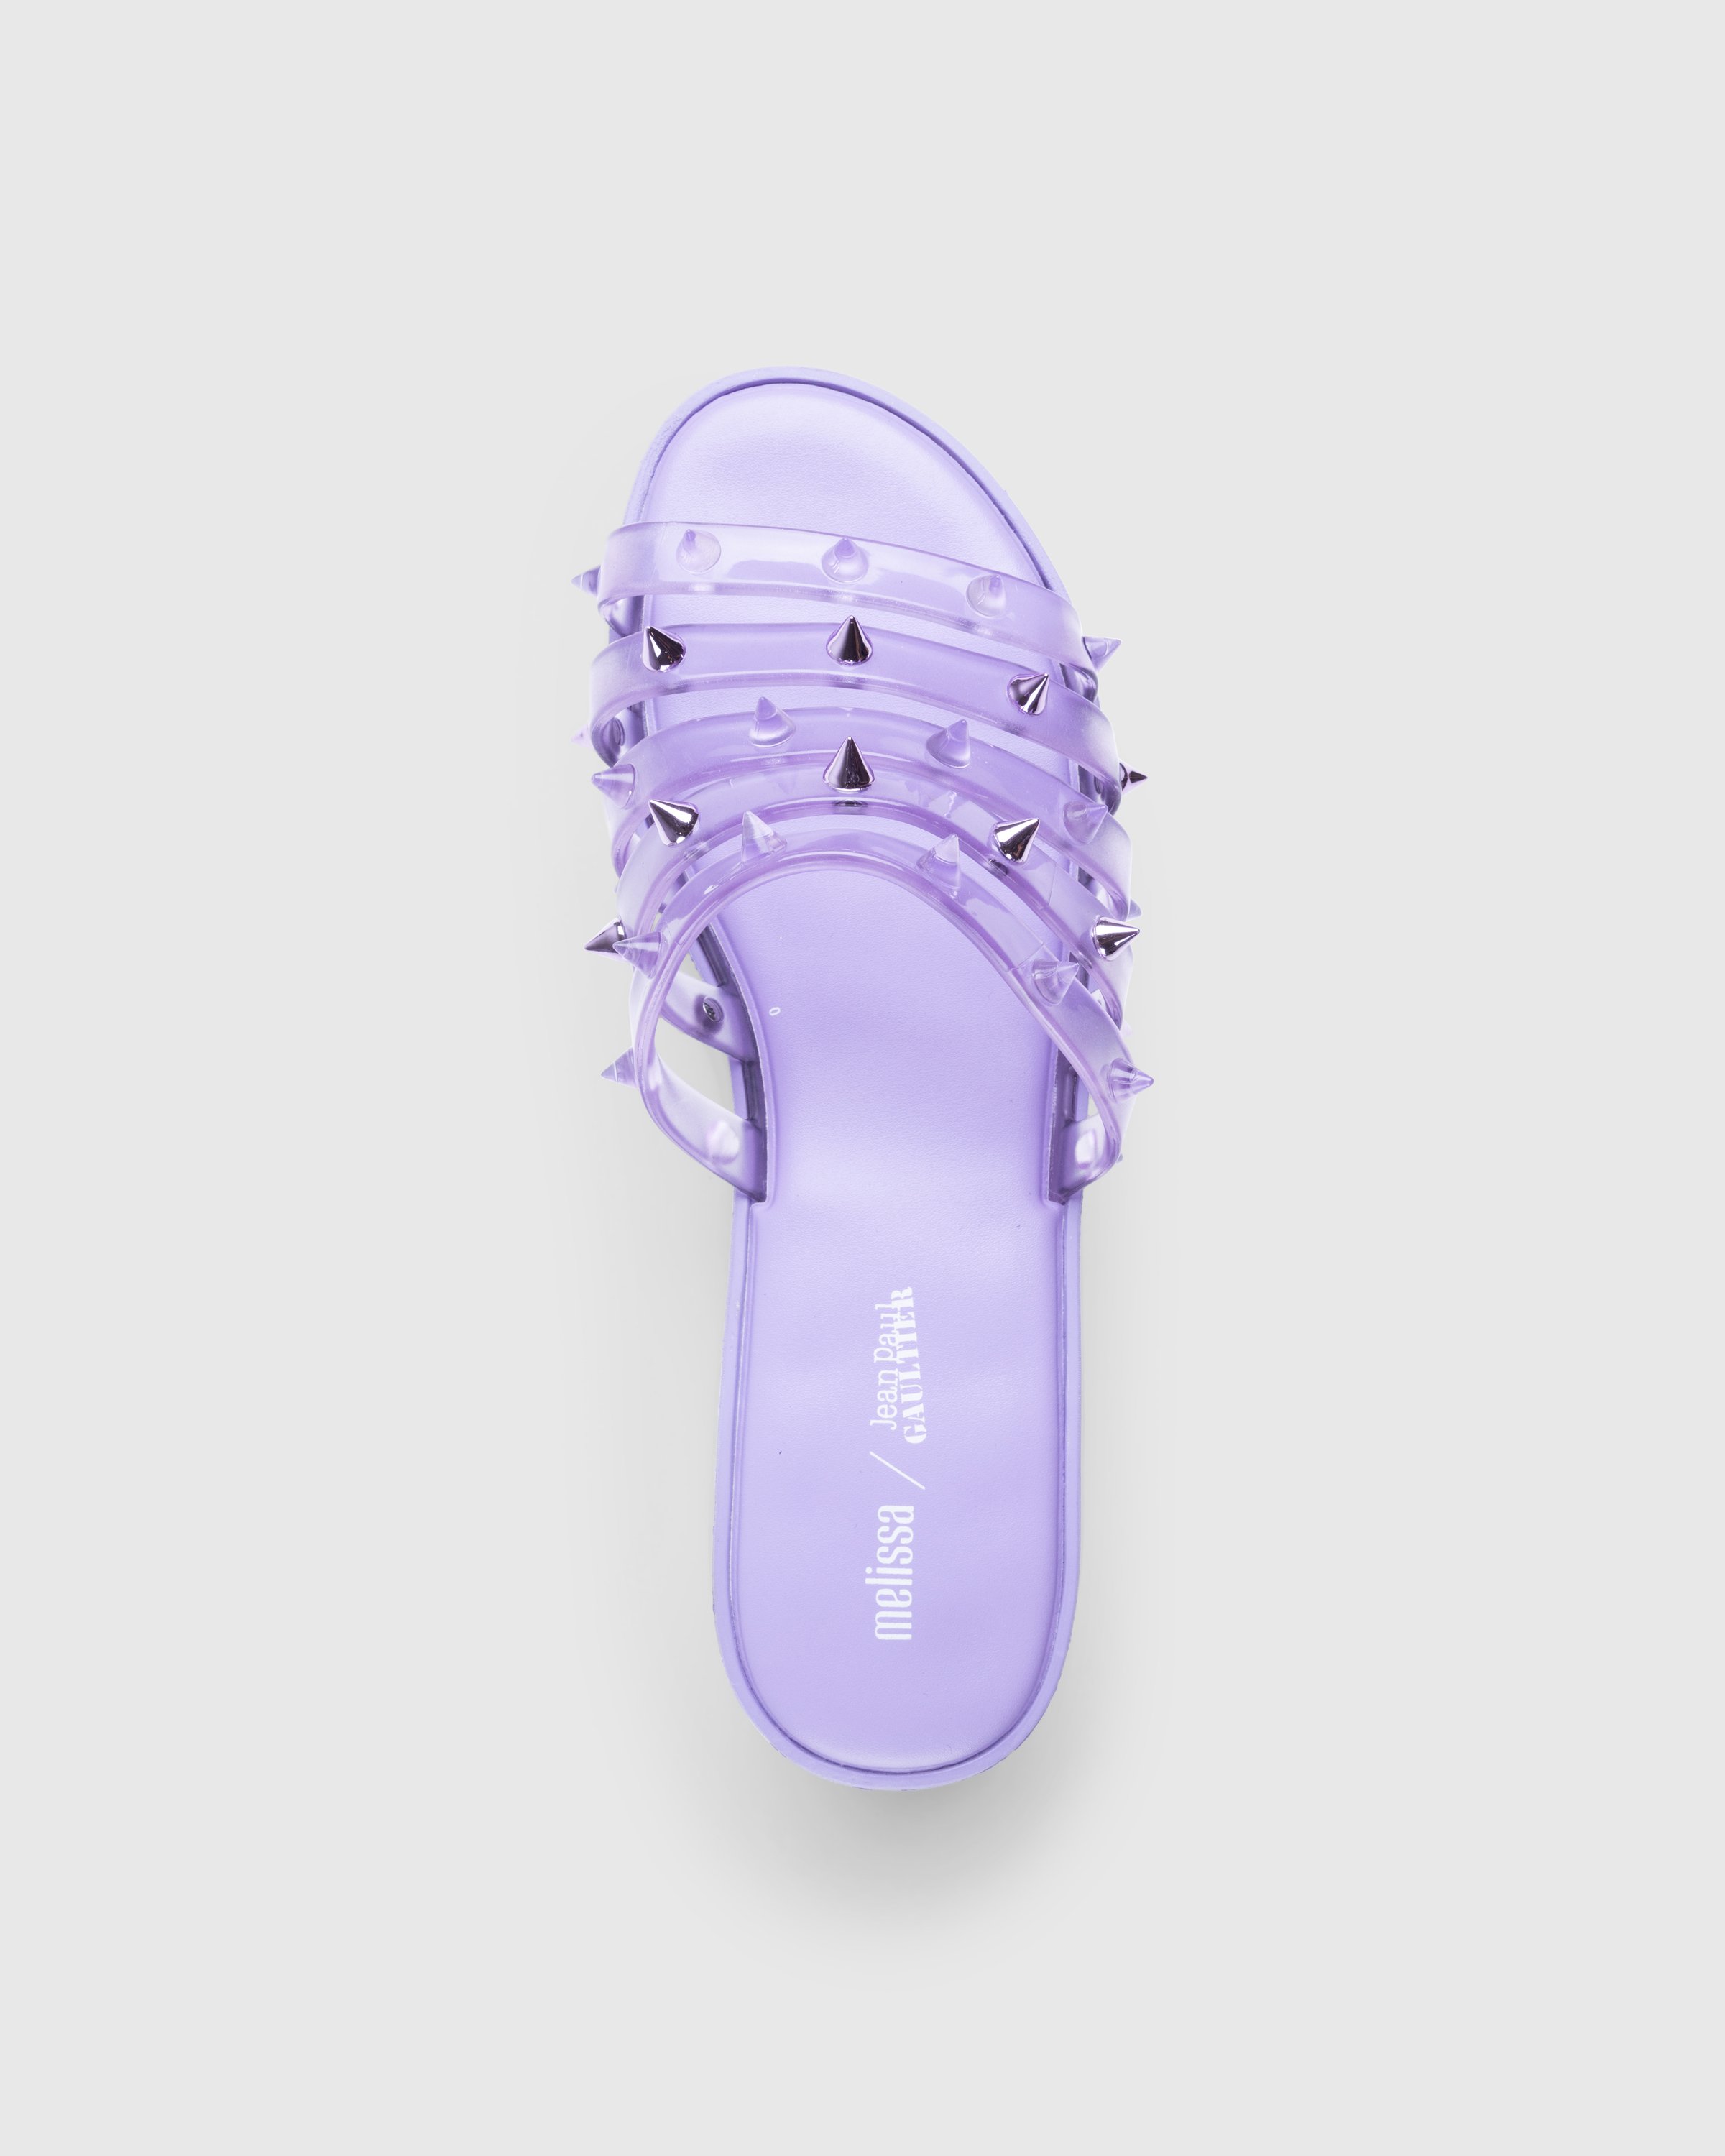 Jean Paul Gaultier x Melissa - Becky Punk Love Mule Purple - Footwear - Purple - Image 5